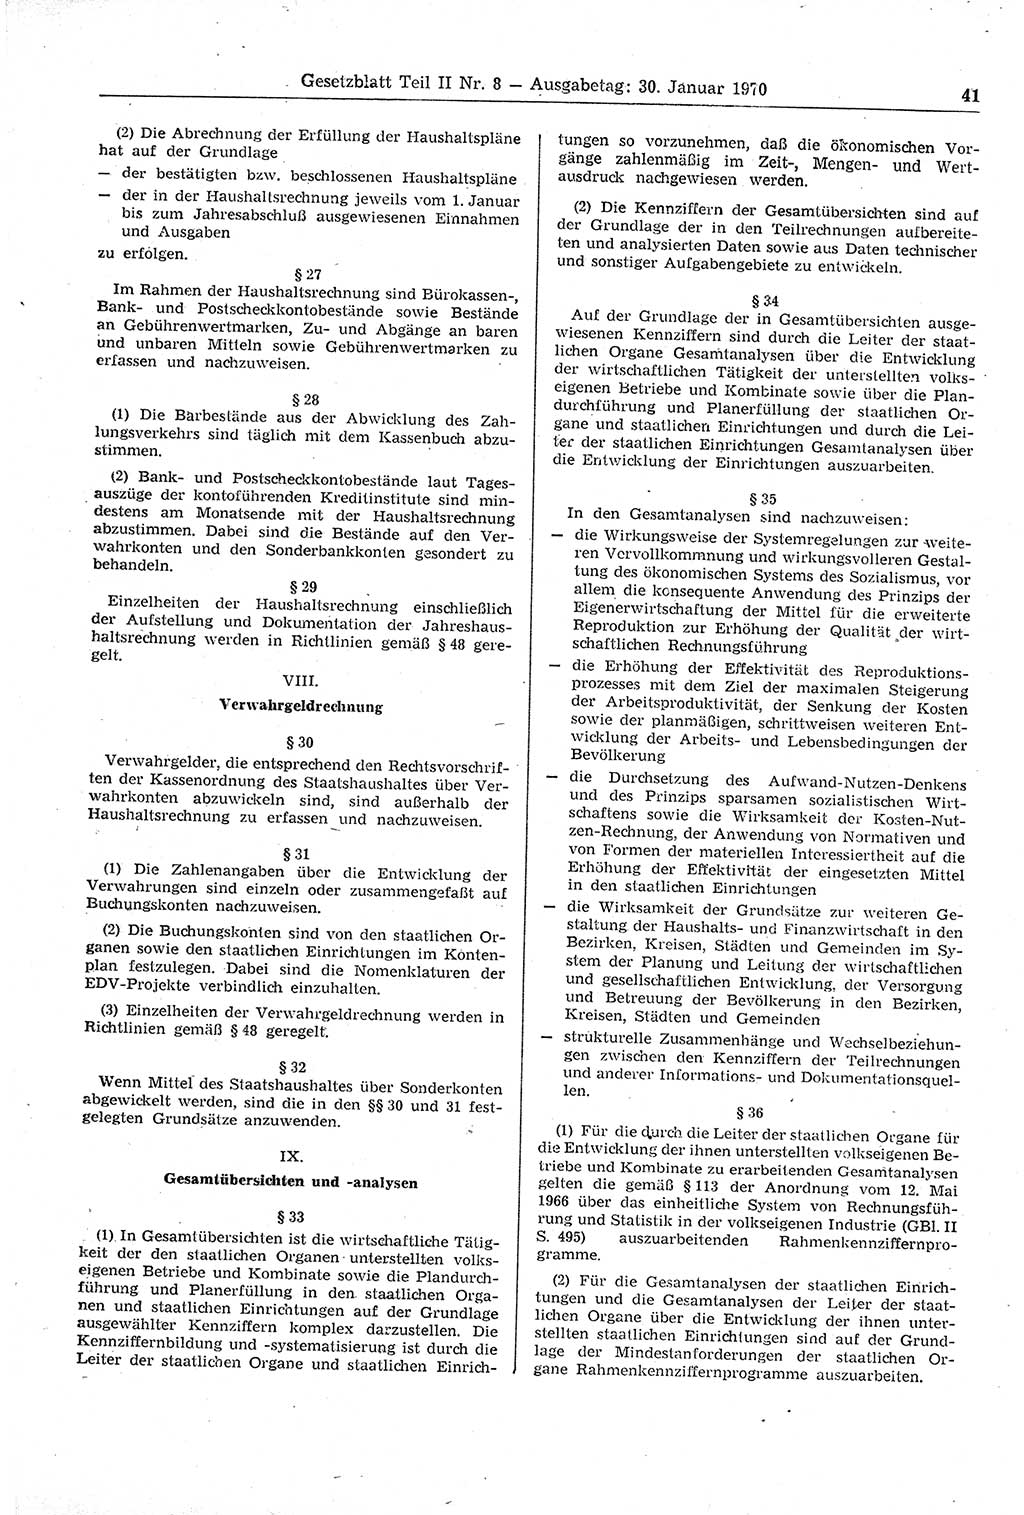 Gesetzblatt (GBl.) der Deutschen Demokratischen Republik (DDR) Teil ⅠⅠ 1970, Seite 41 (GBl. DDR ⅠⅠ 1970, S. 41)